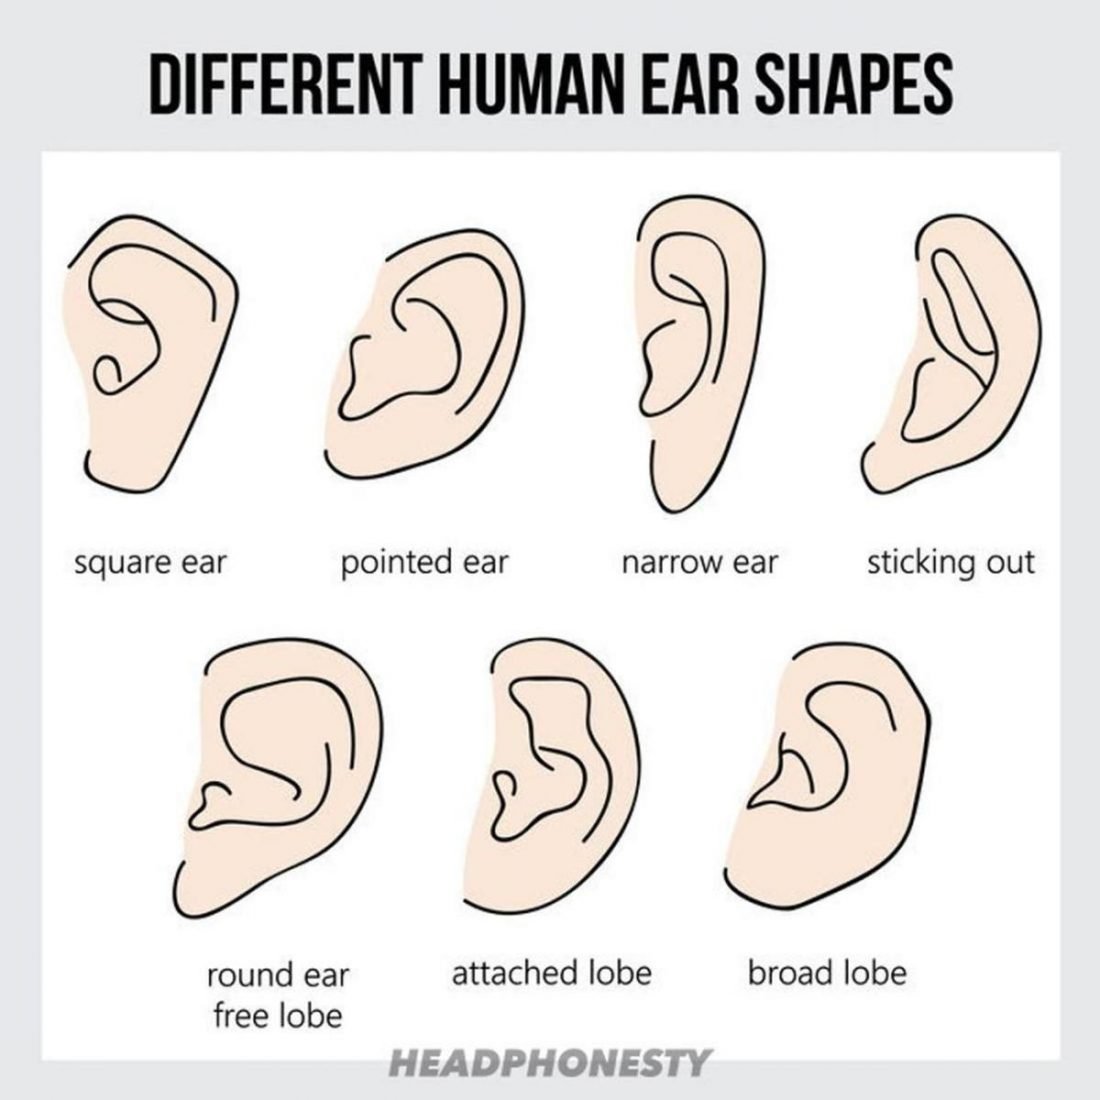 Oreja cuadrada, oreja puntiaguda, oreja estrecha, oreja sobresaliente, lóbulo libre de la oreja, lóbulo unido y lóbulo ancho (De: 123rf)